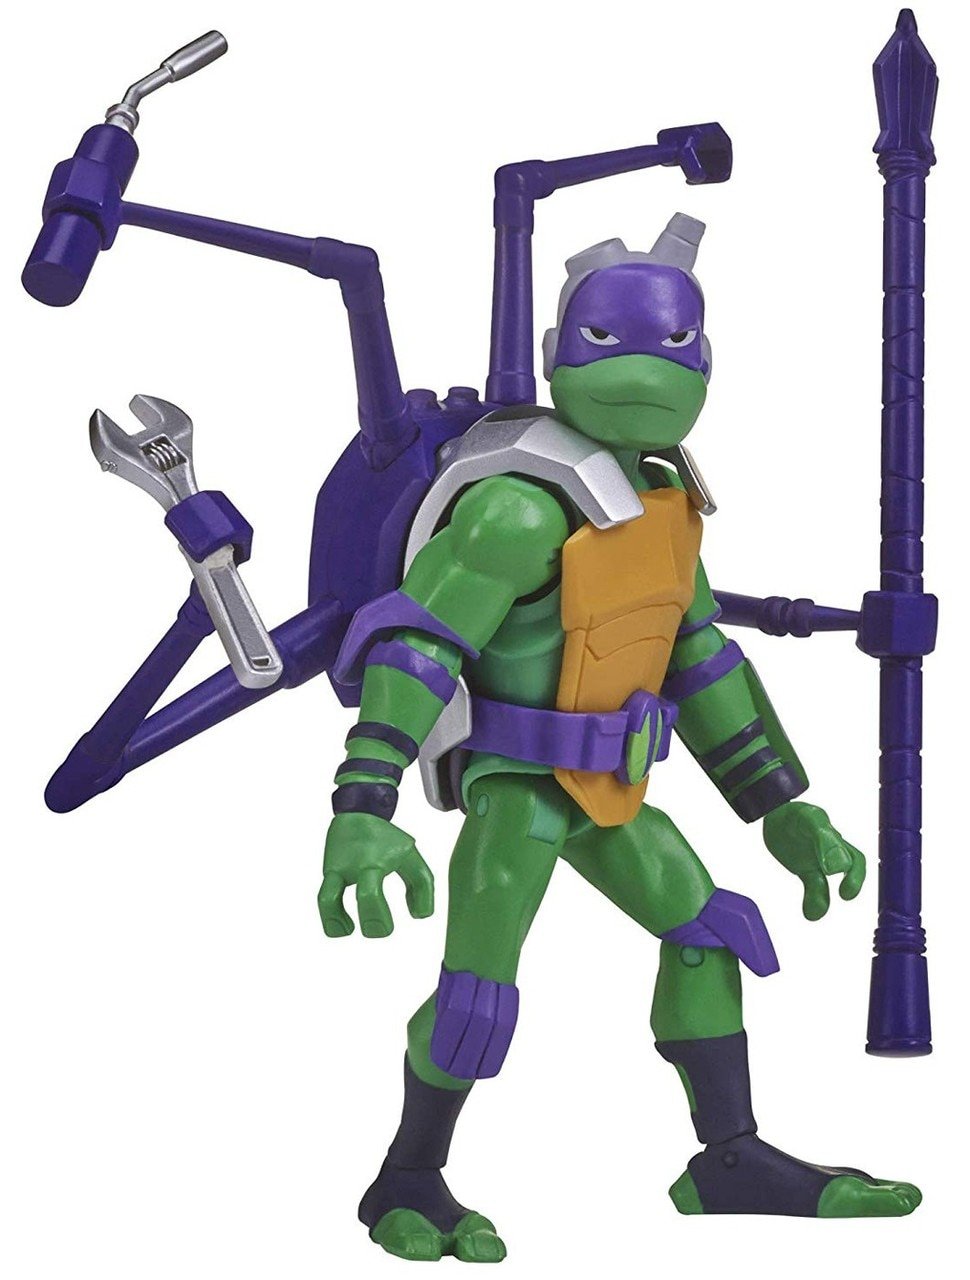 Køb Rise of the Teenage Ninja Turtles - Battle Shell Action Figure